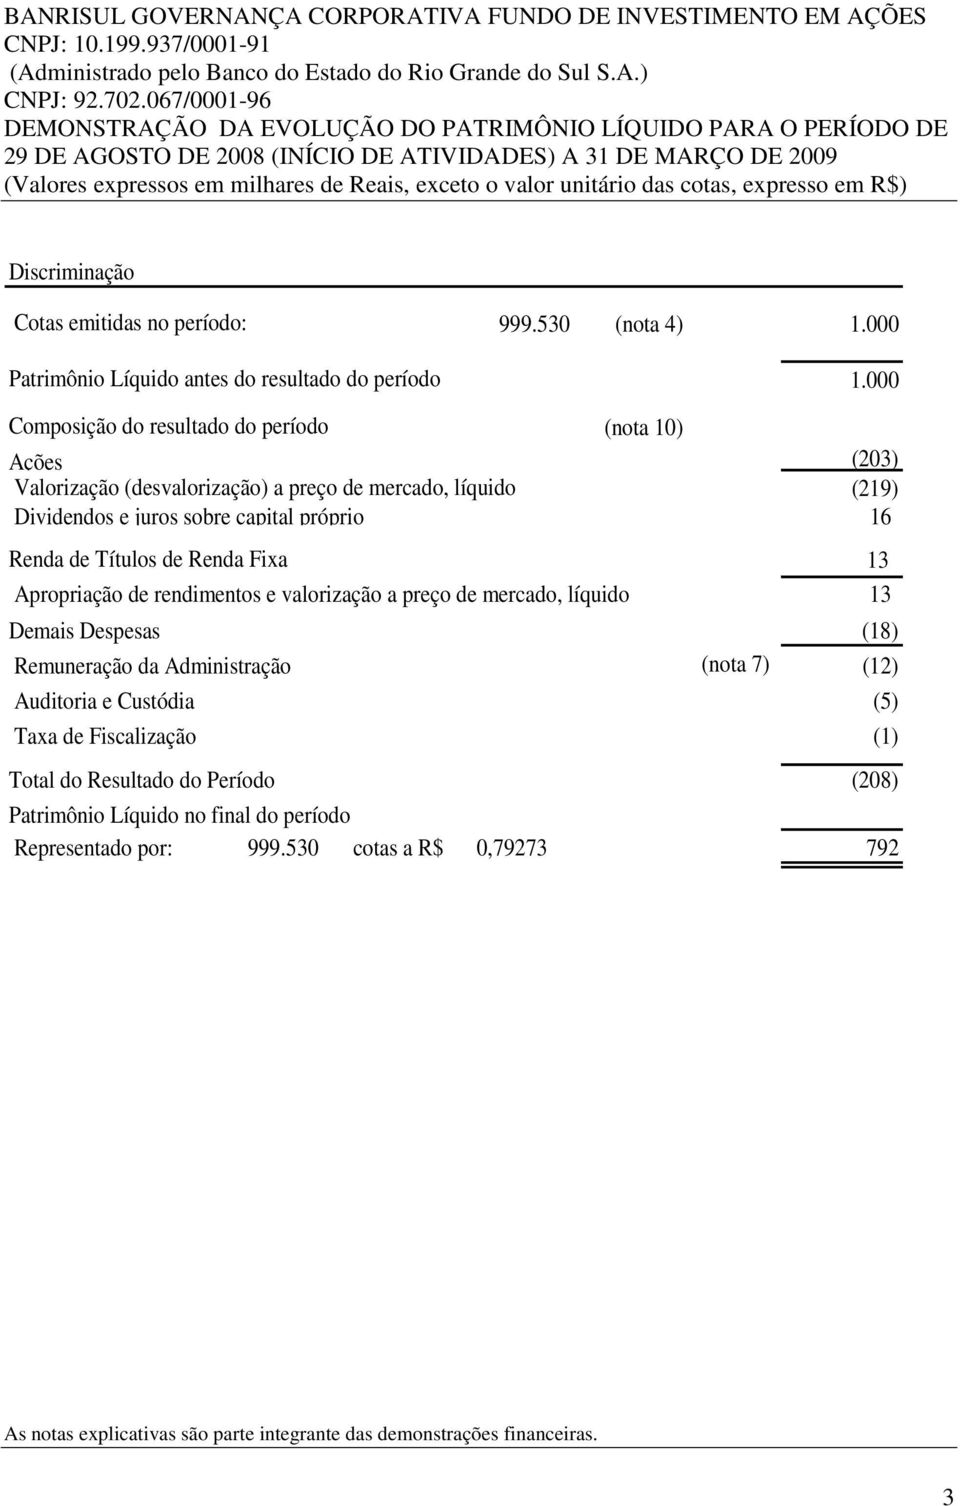 unitário das cotas, expresso em R$) Discriminação Cotas emitidas no período: Patrimônio Líquido antes do resultado do período 999.530 (nota 4) 1.000 1.